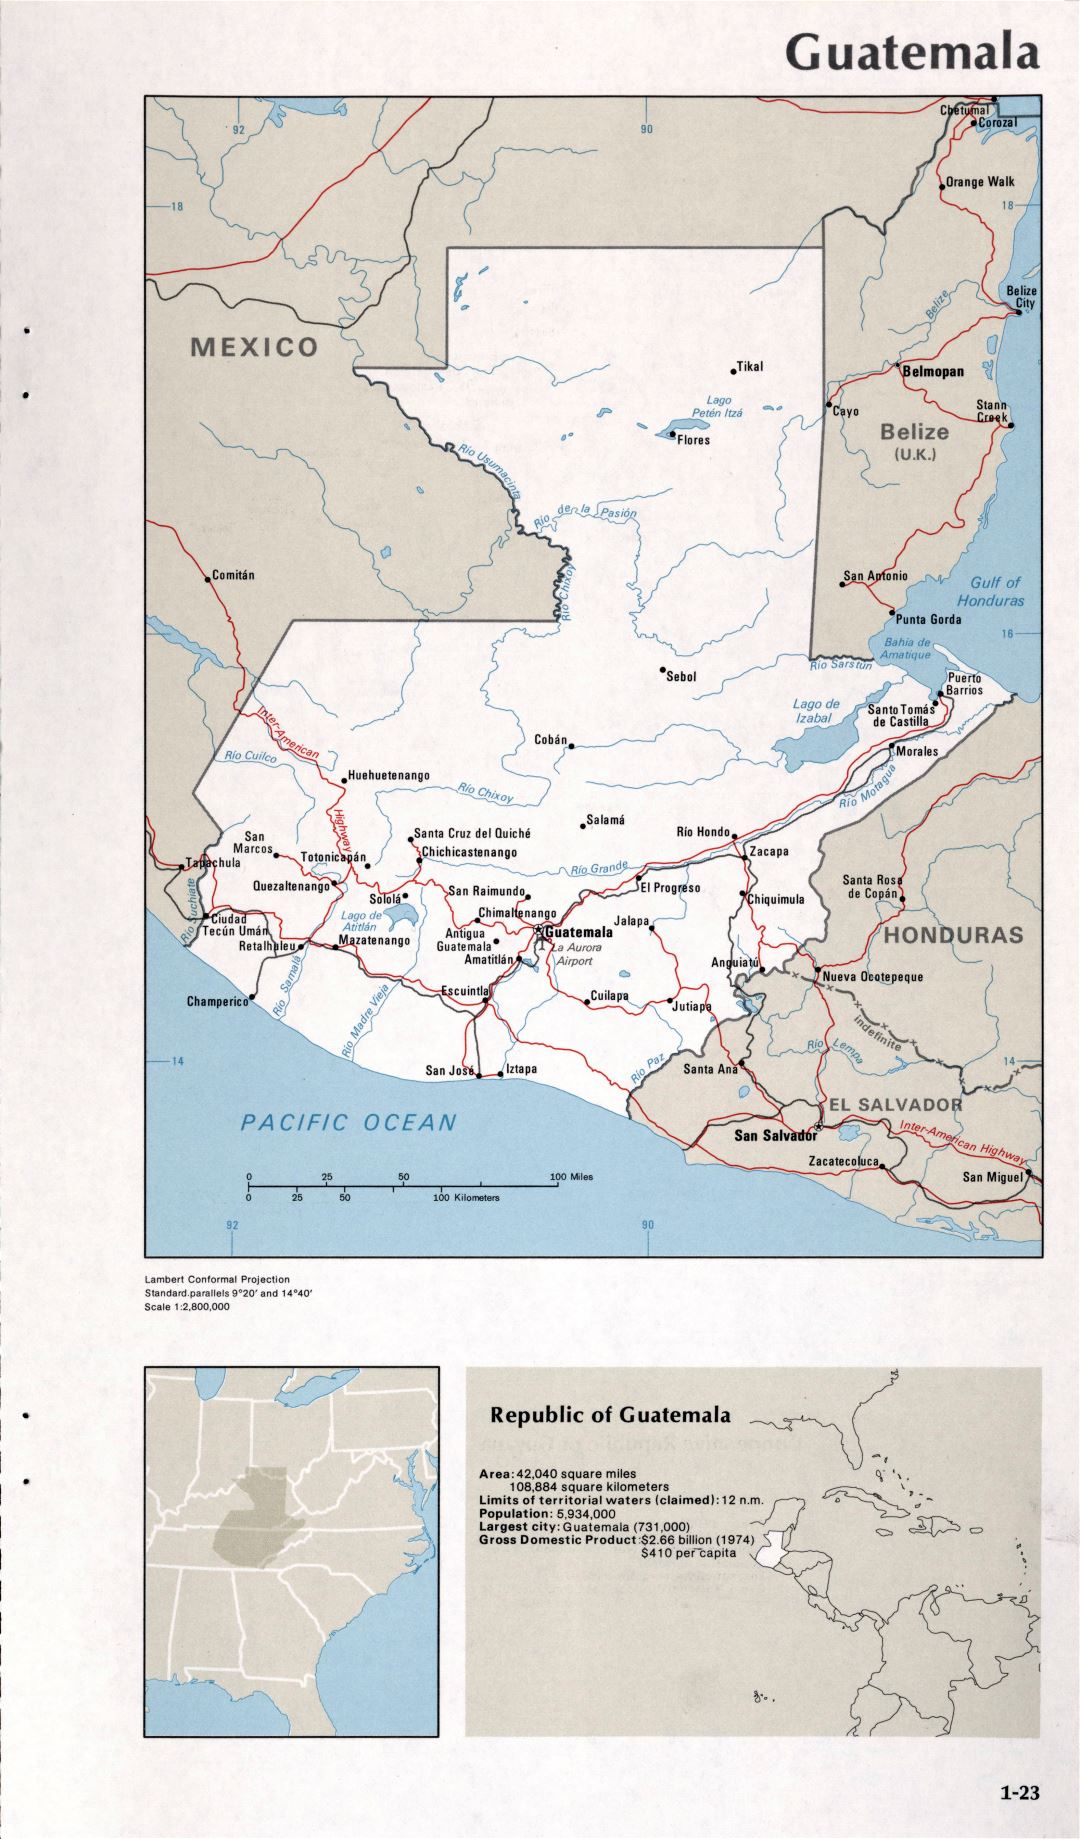 Map of Guatemala (1-23)